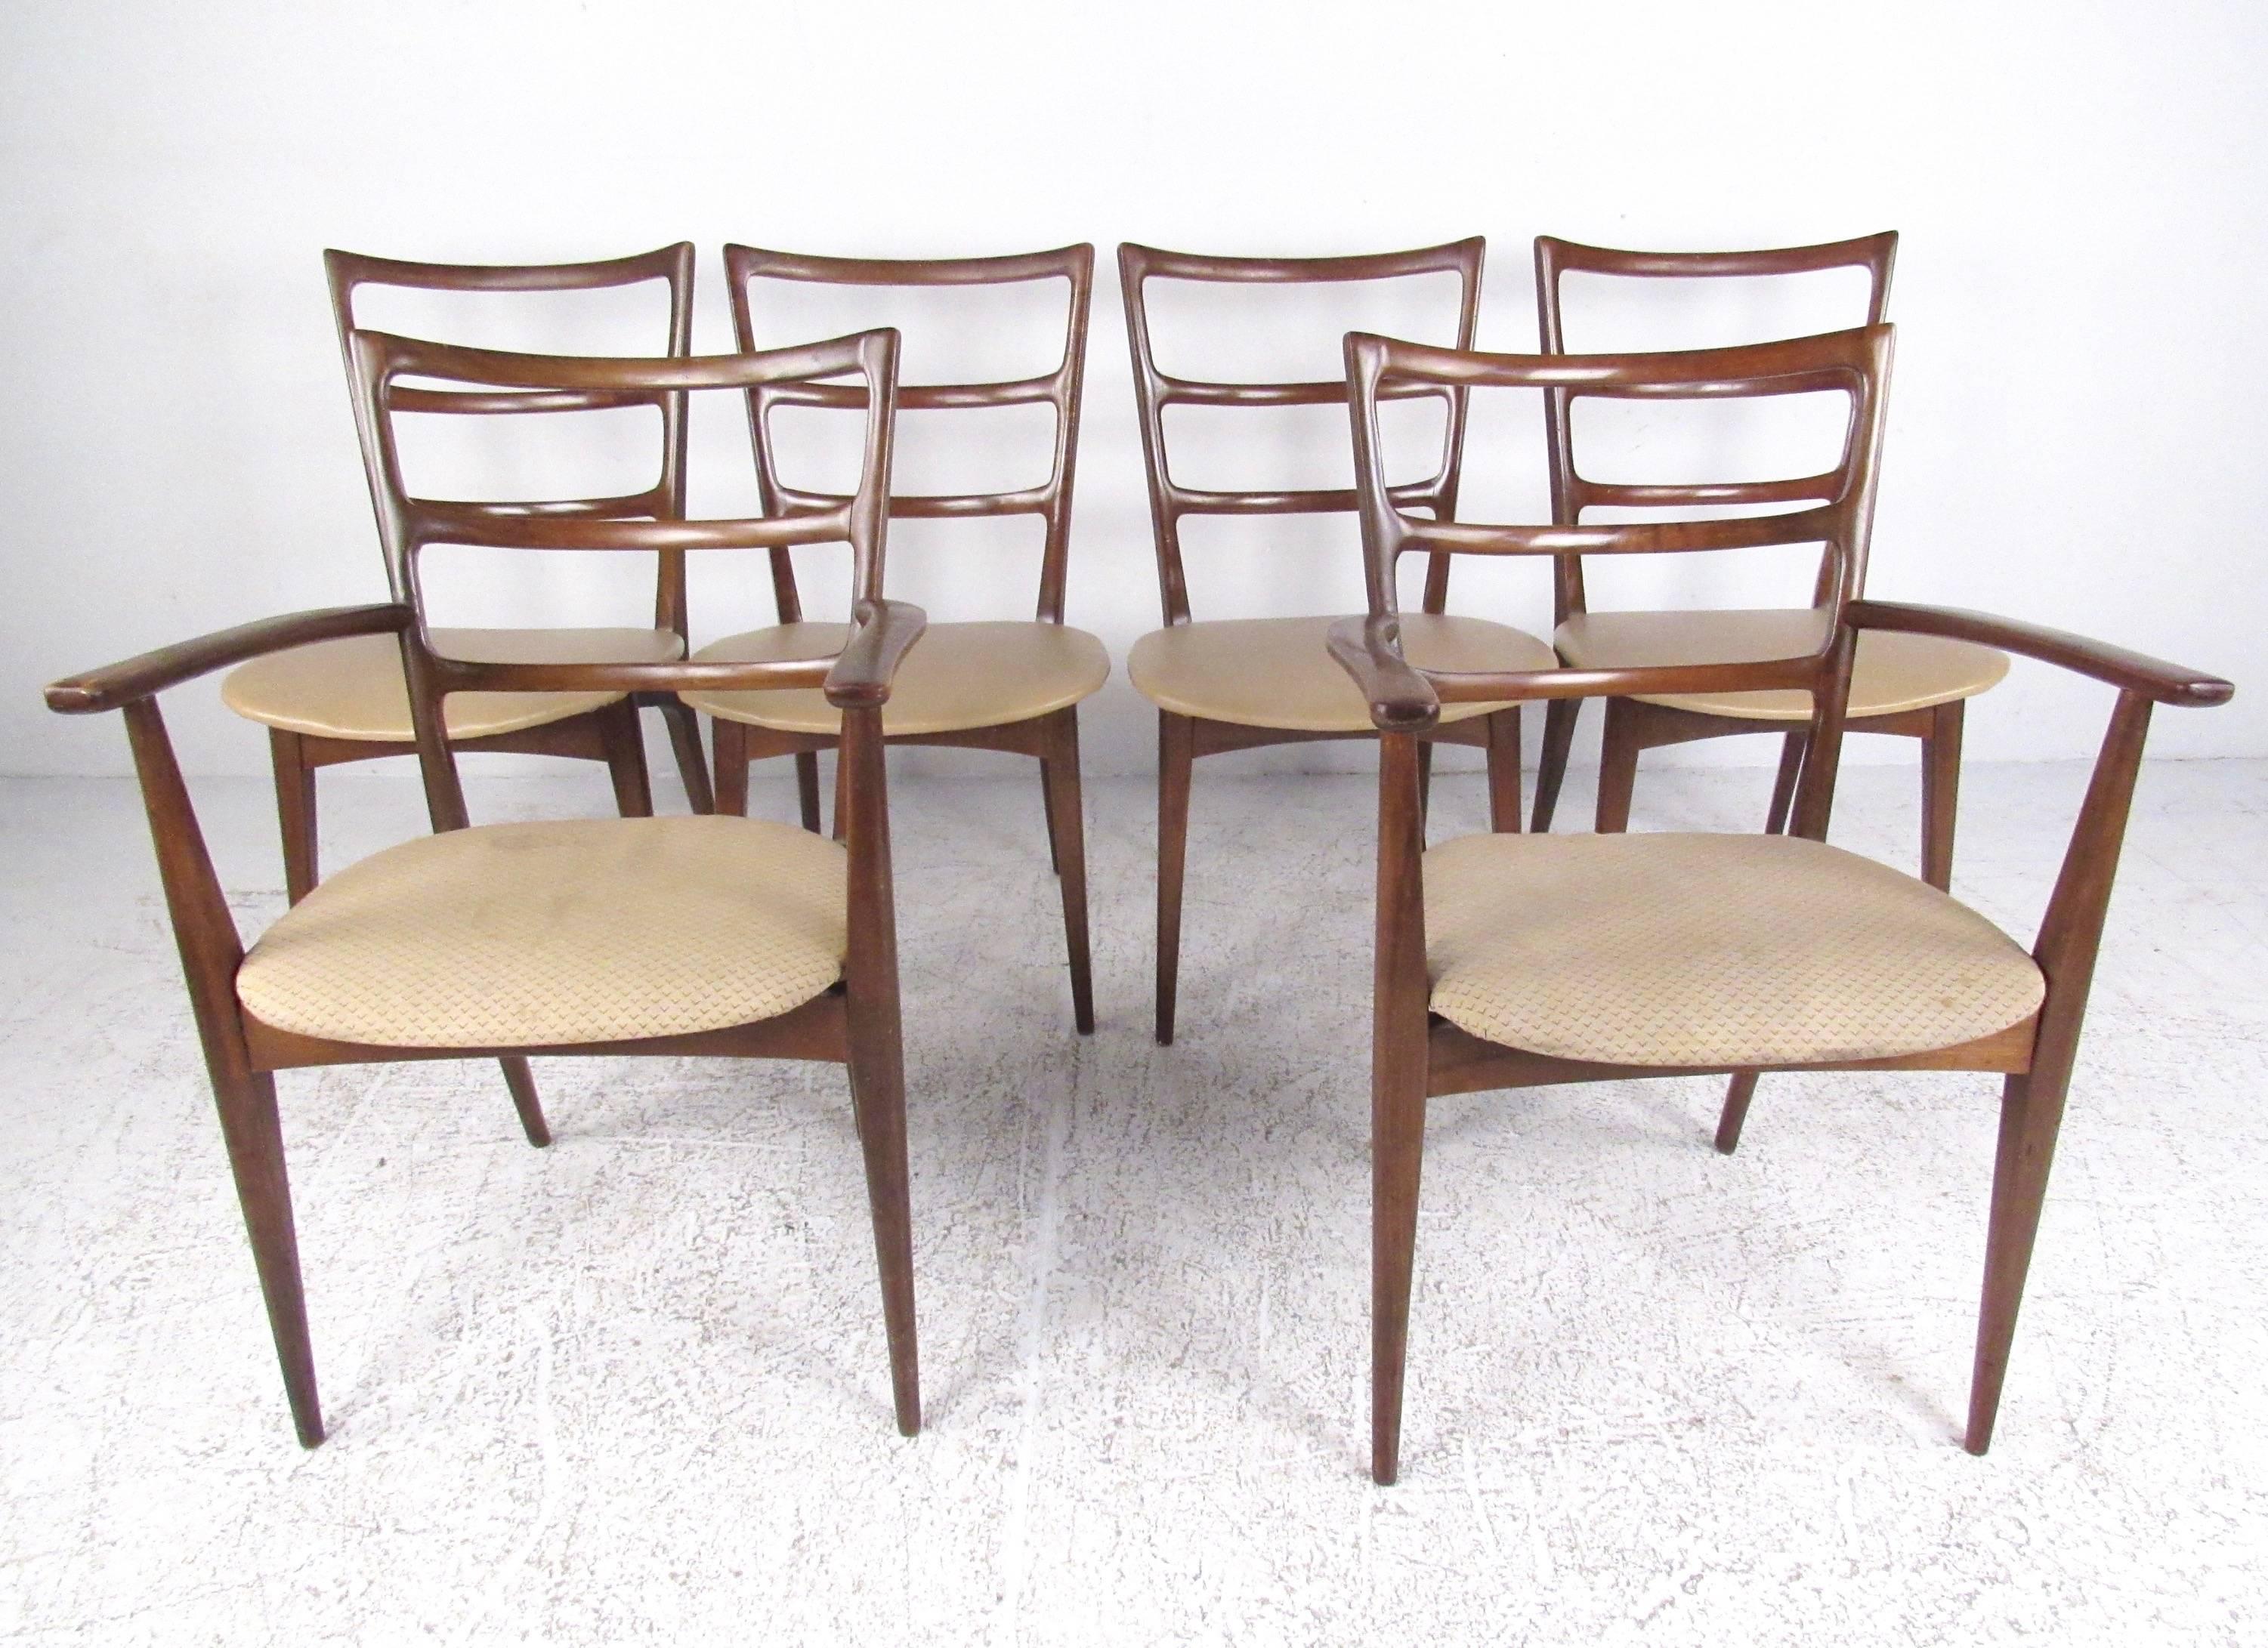 Dieses stilvolle Set aus modernen Vintage-Esszimmerstühlen besteht aus zwei Sesseln und vier Beistellstühlen. Die geformten Hochlehner und die bequemen gepolsterten Sitze tragen zur Vielseitigkeit und zum Charme des Sets bei. Die perfekte Mischung